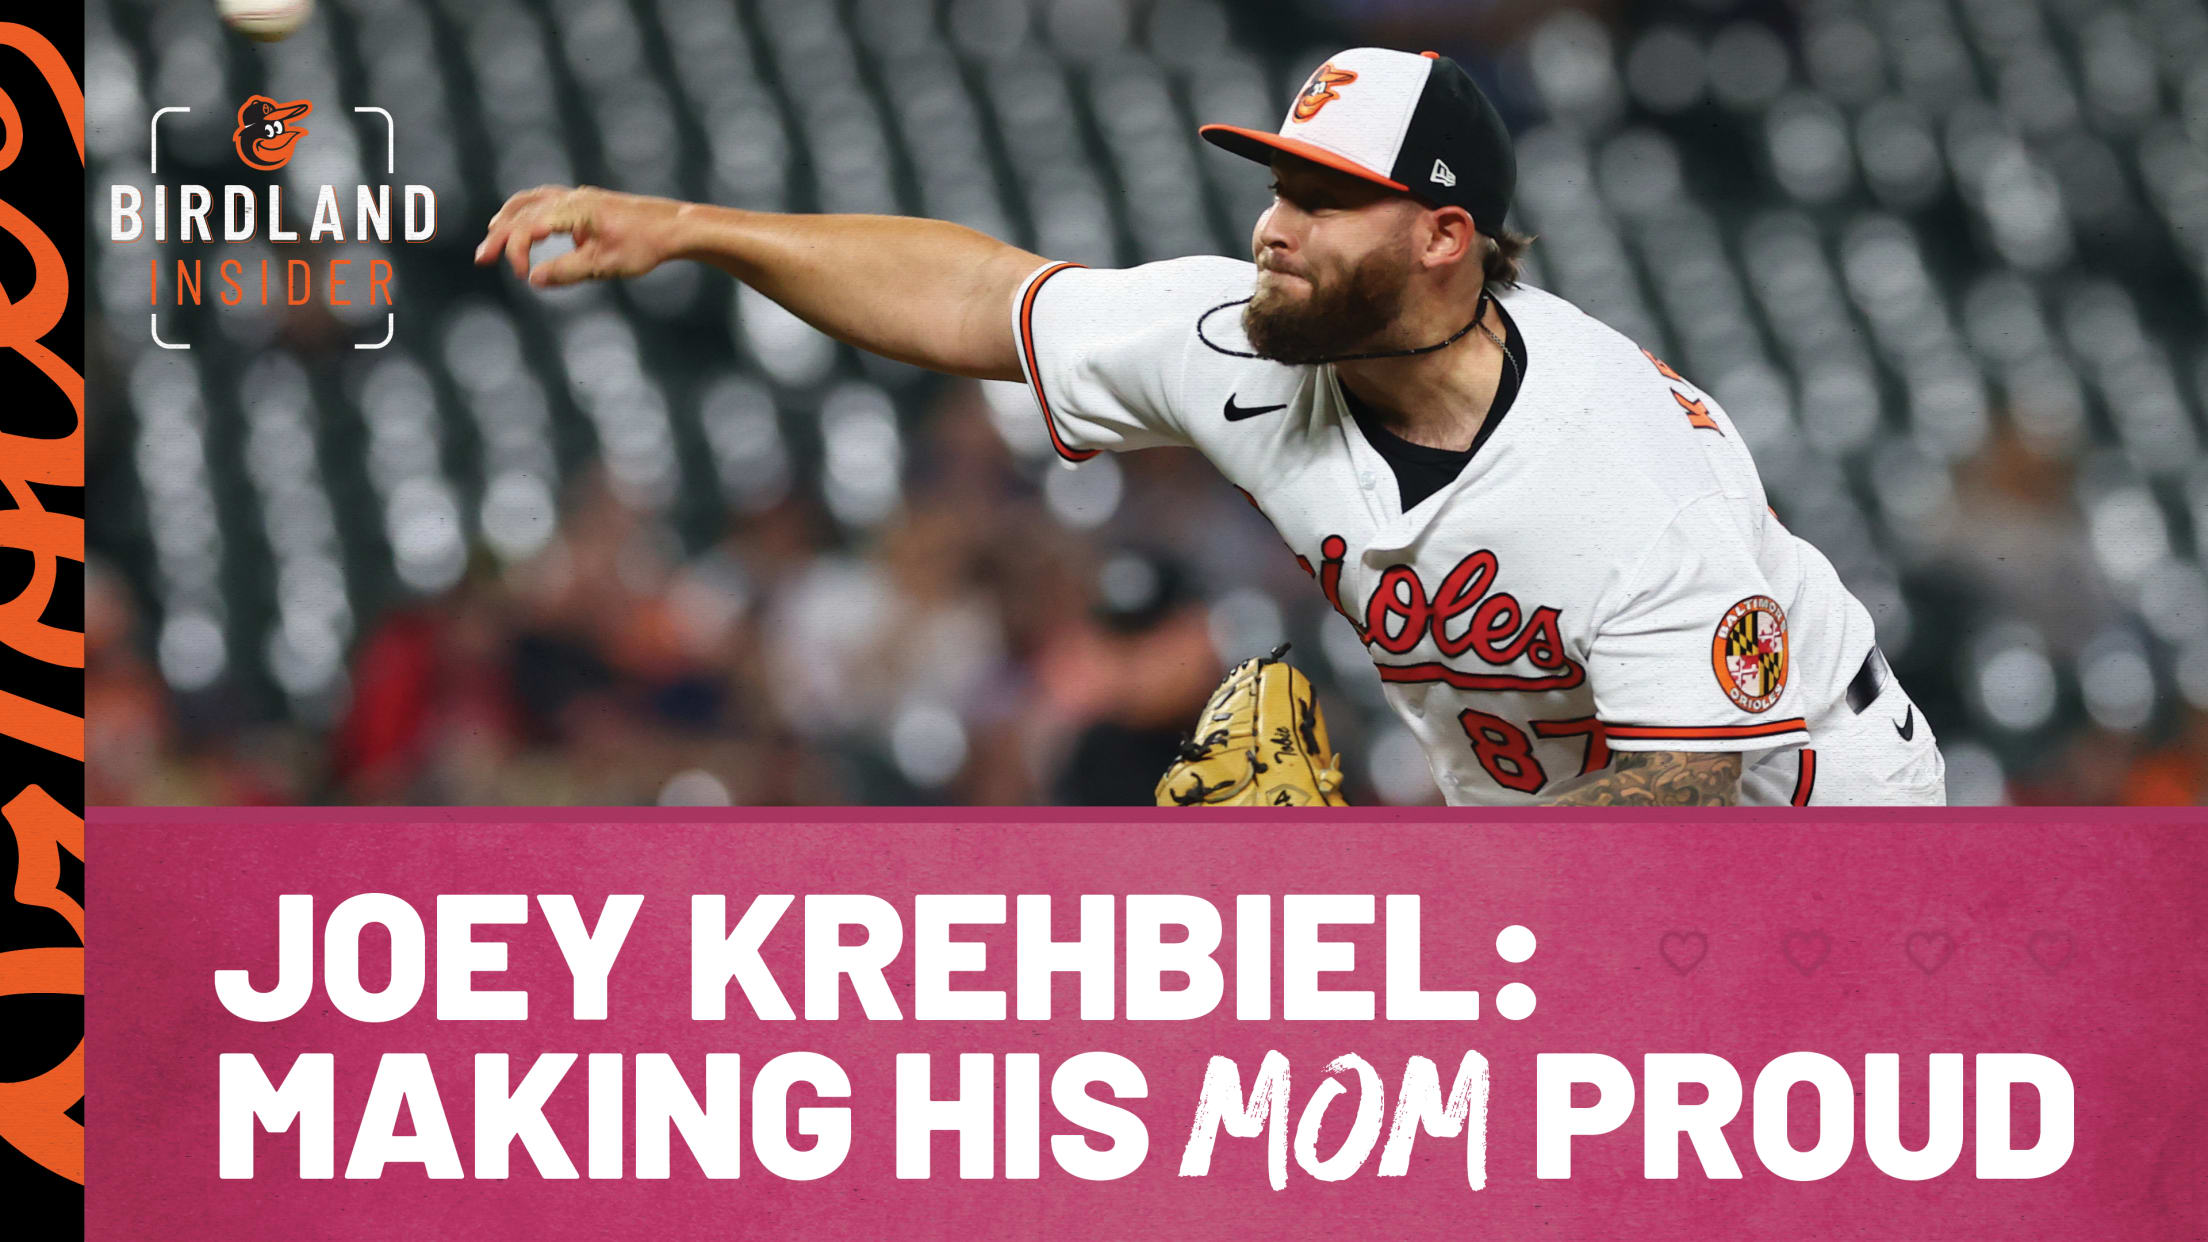 bal-joey-krehbiel-making-his-mom-proud-header